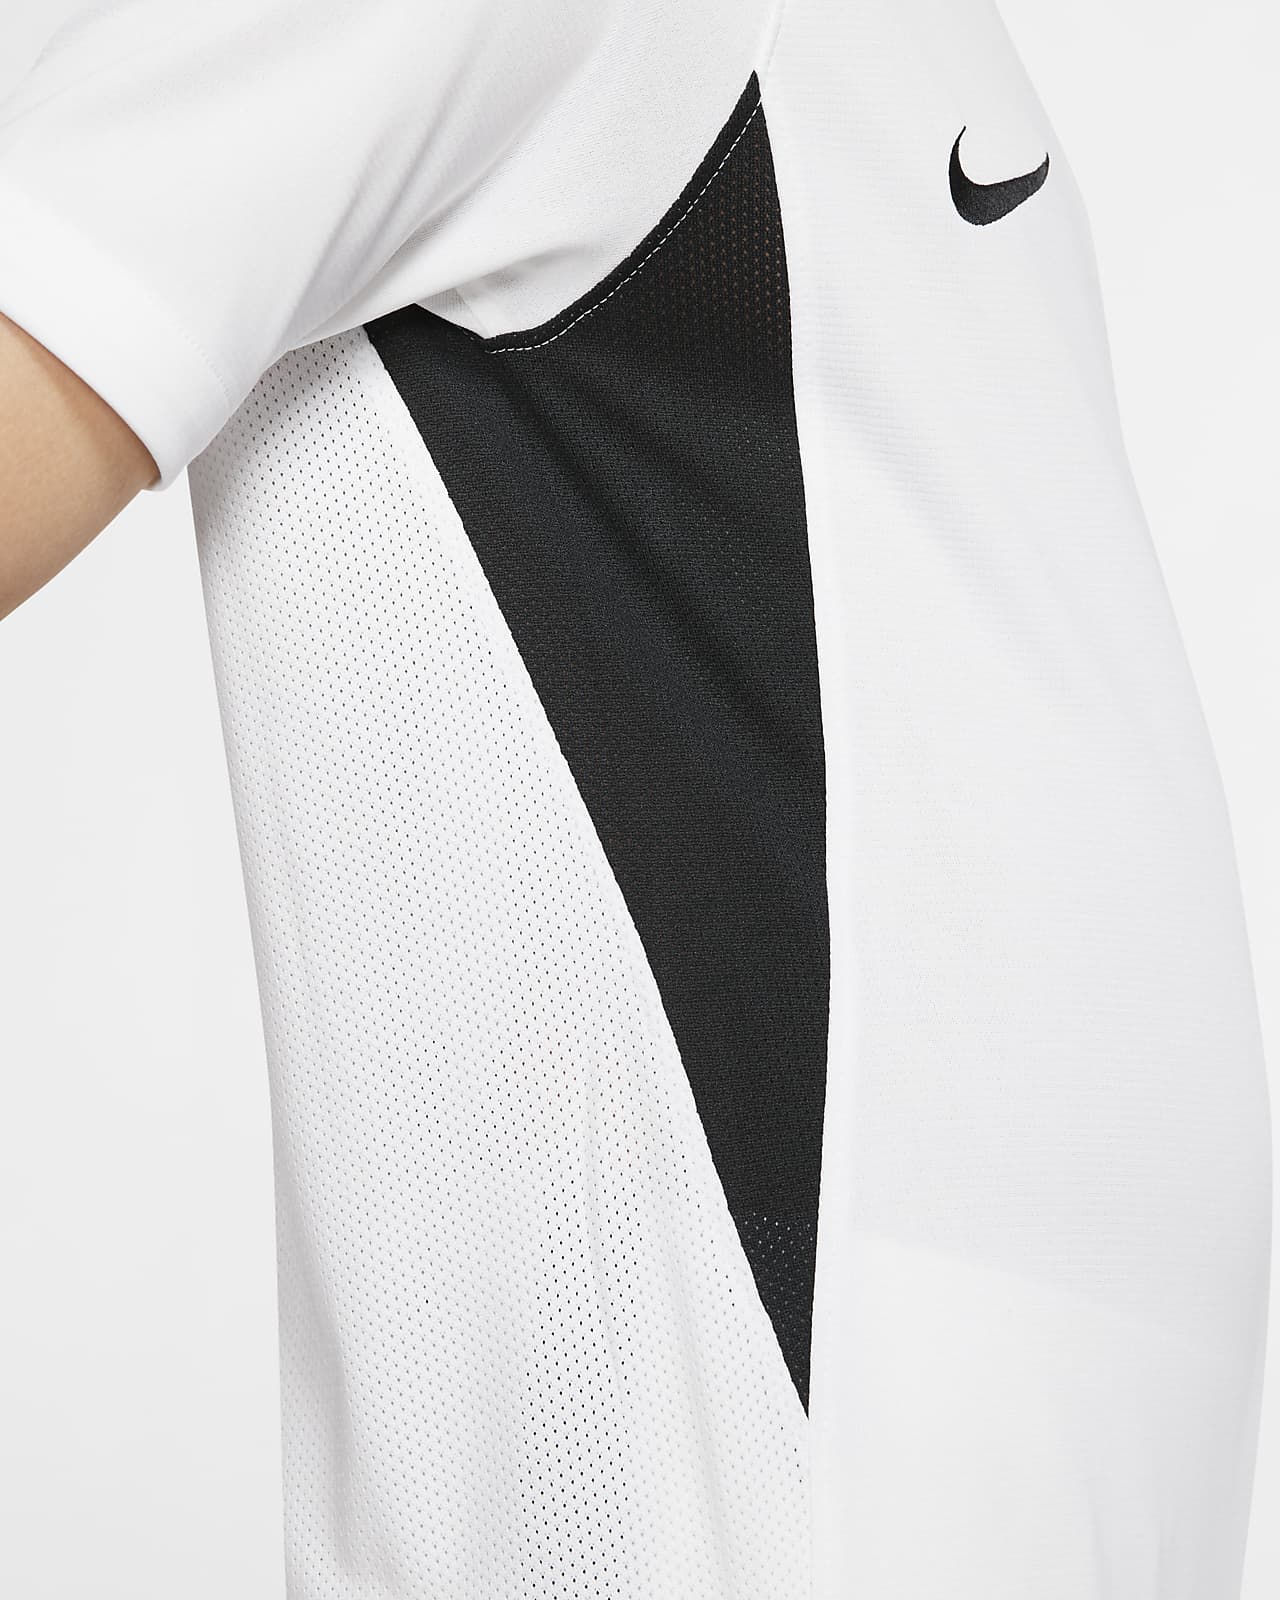 Nike公式 ナイキ Dri Fit レジェンド ジュニア サッカーユニフォーム オンラインストア 通販サイト